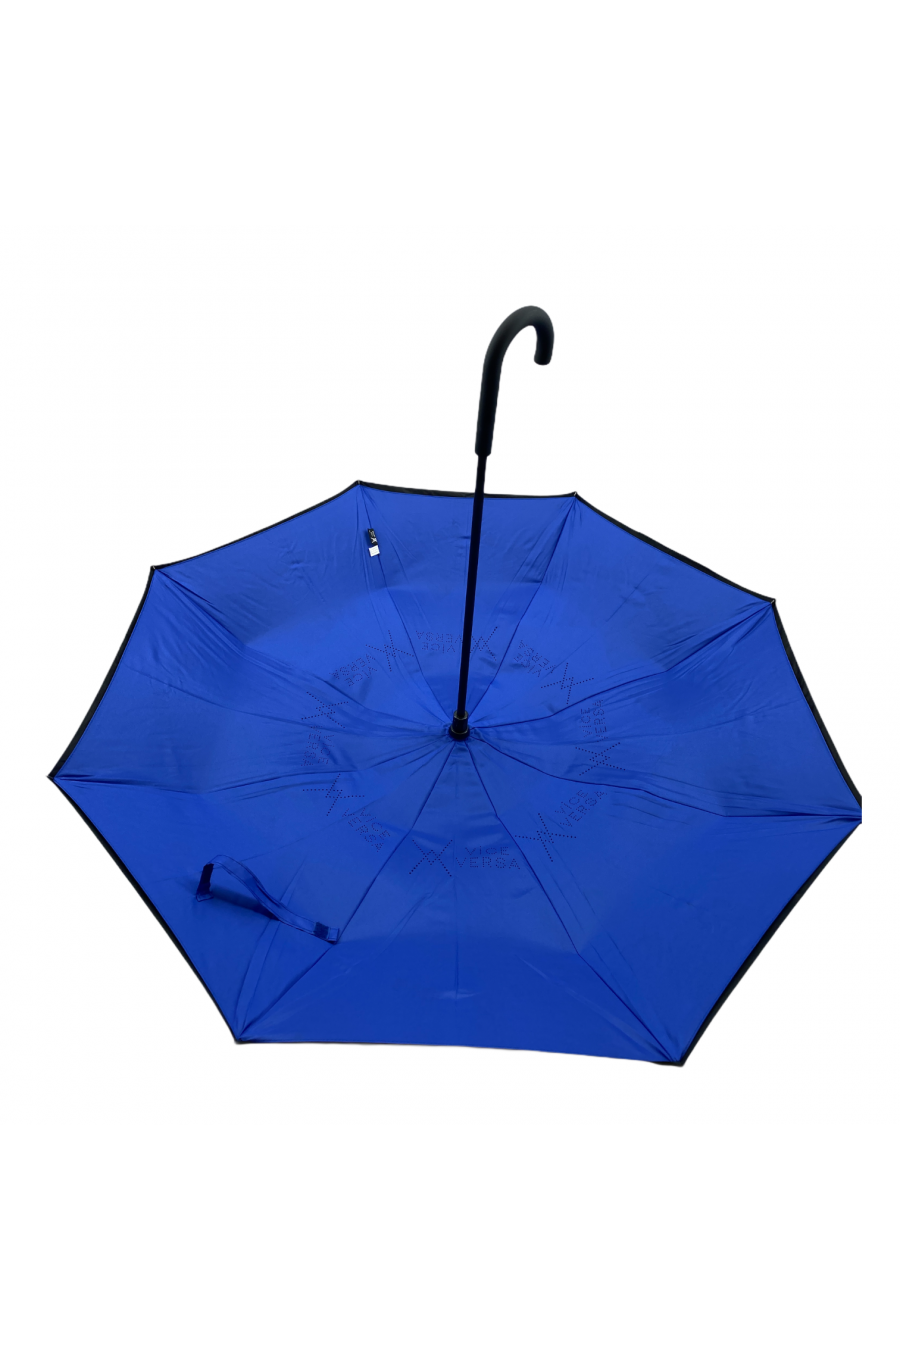 vaux-galon fantaise-parapluie canne femme Taille TU Couleur générique Bleu  Nuance Jeans